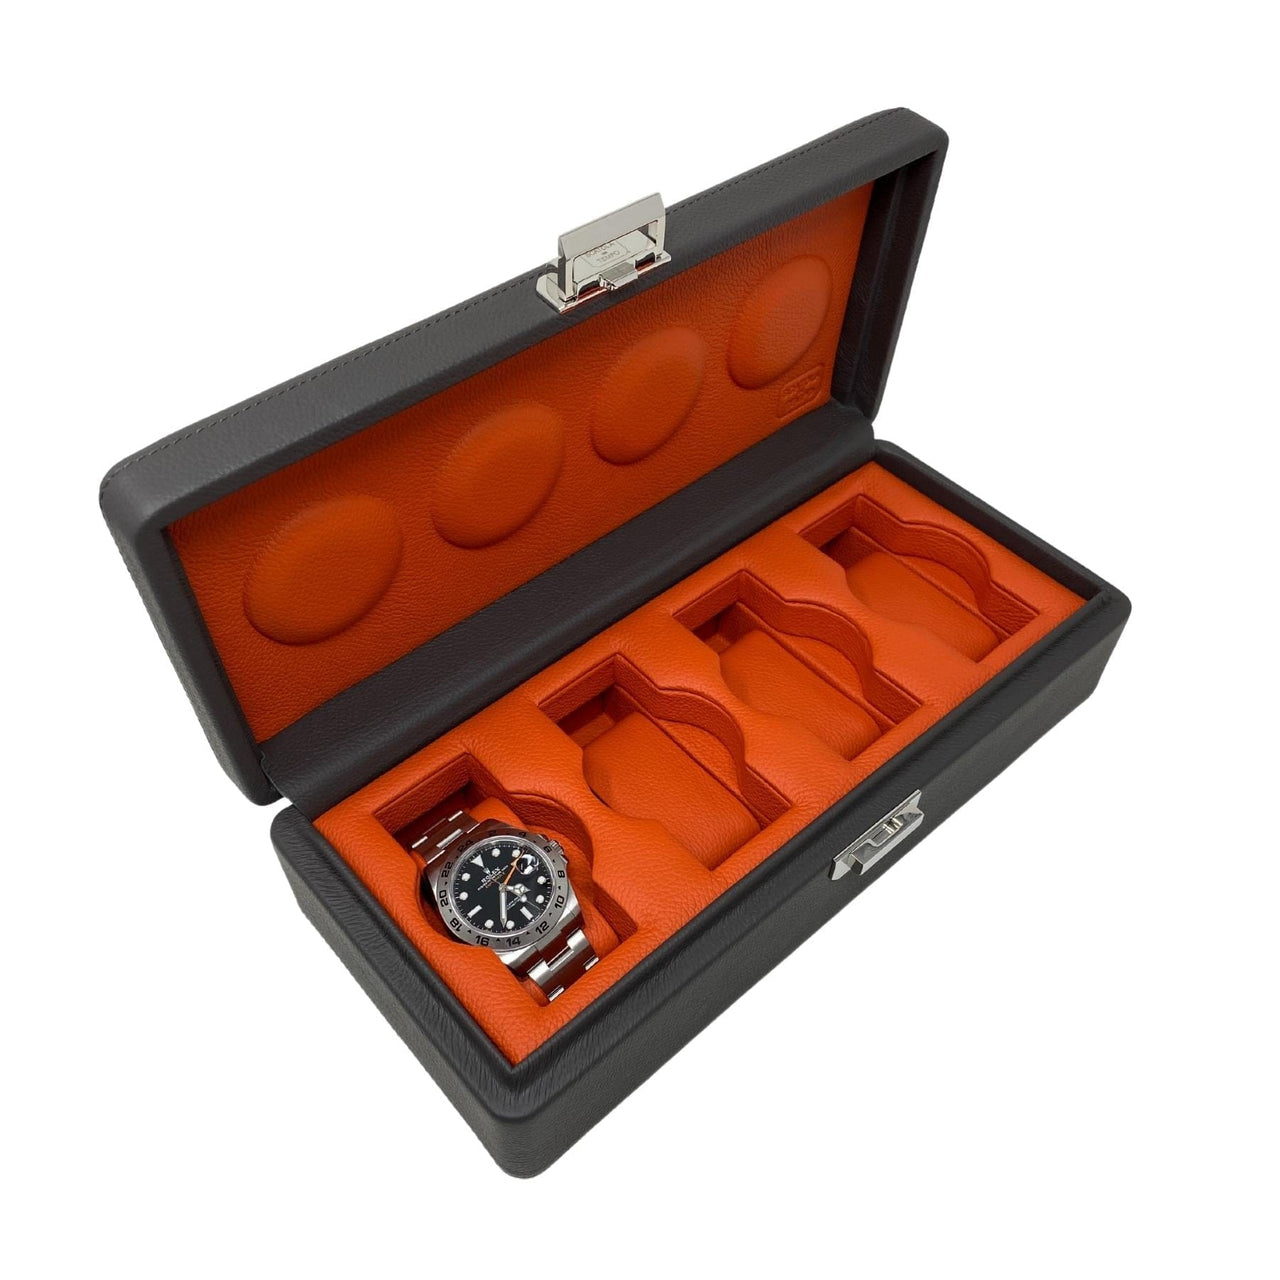 Watch Cases Wrist Aficionado Grey and Orange Leather Watch Box for 4 Watches Wrist Aficionado